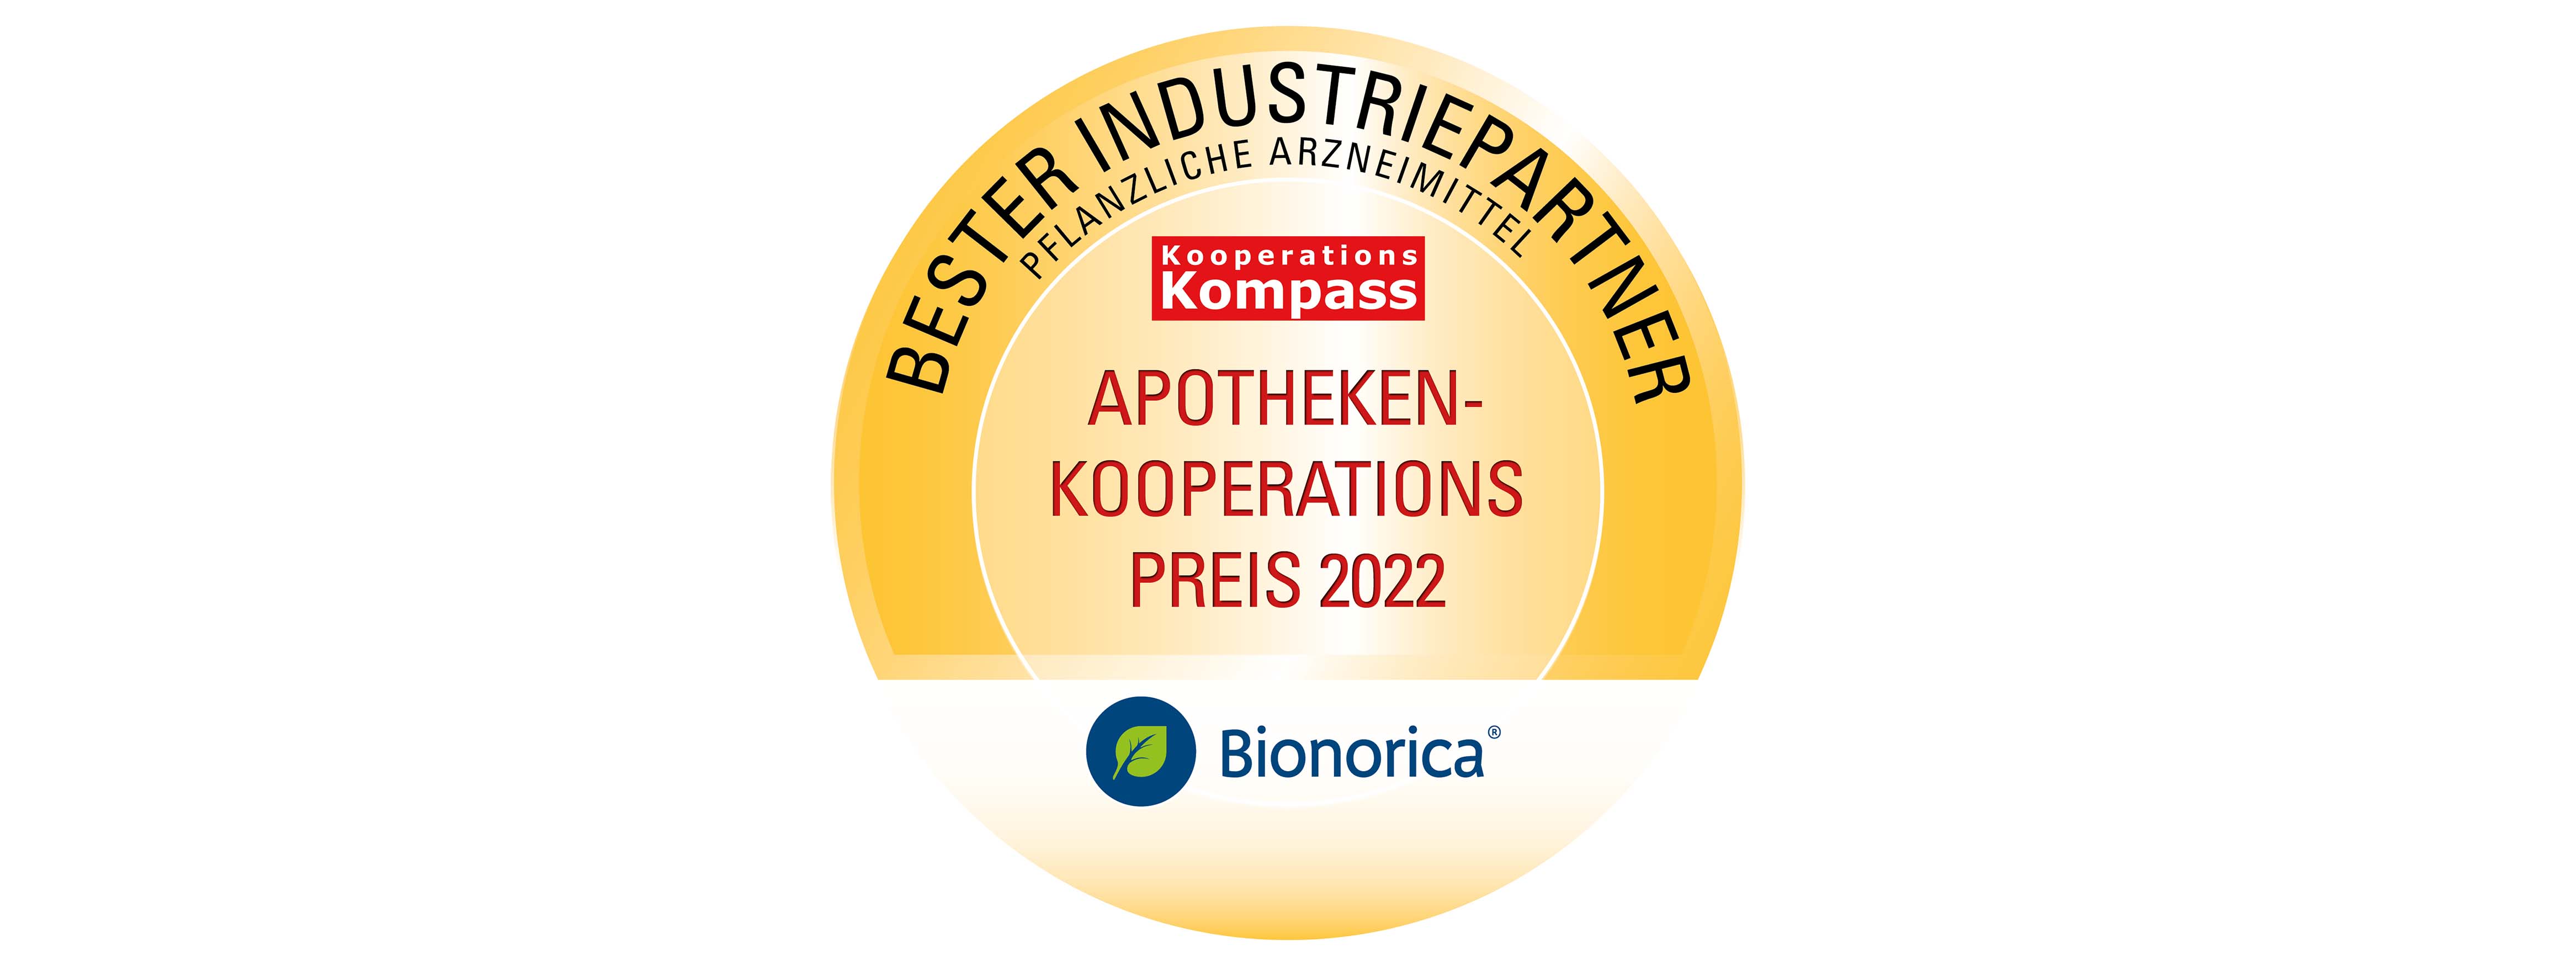 Bionroica ist 2022 bester Partner der Apothekerinnen und Apotheker in Deutschland in der Kategorie „Pflanzliche Arzneimittel“. 